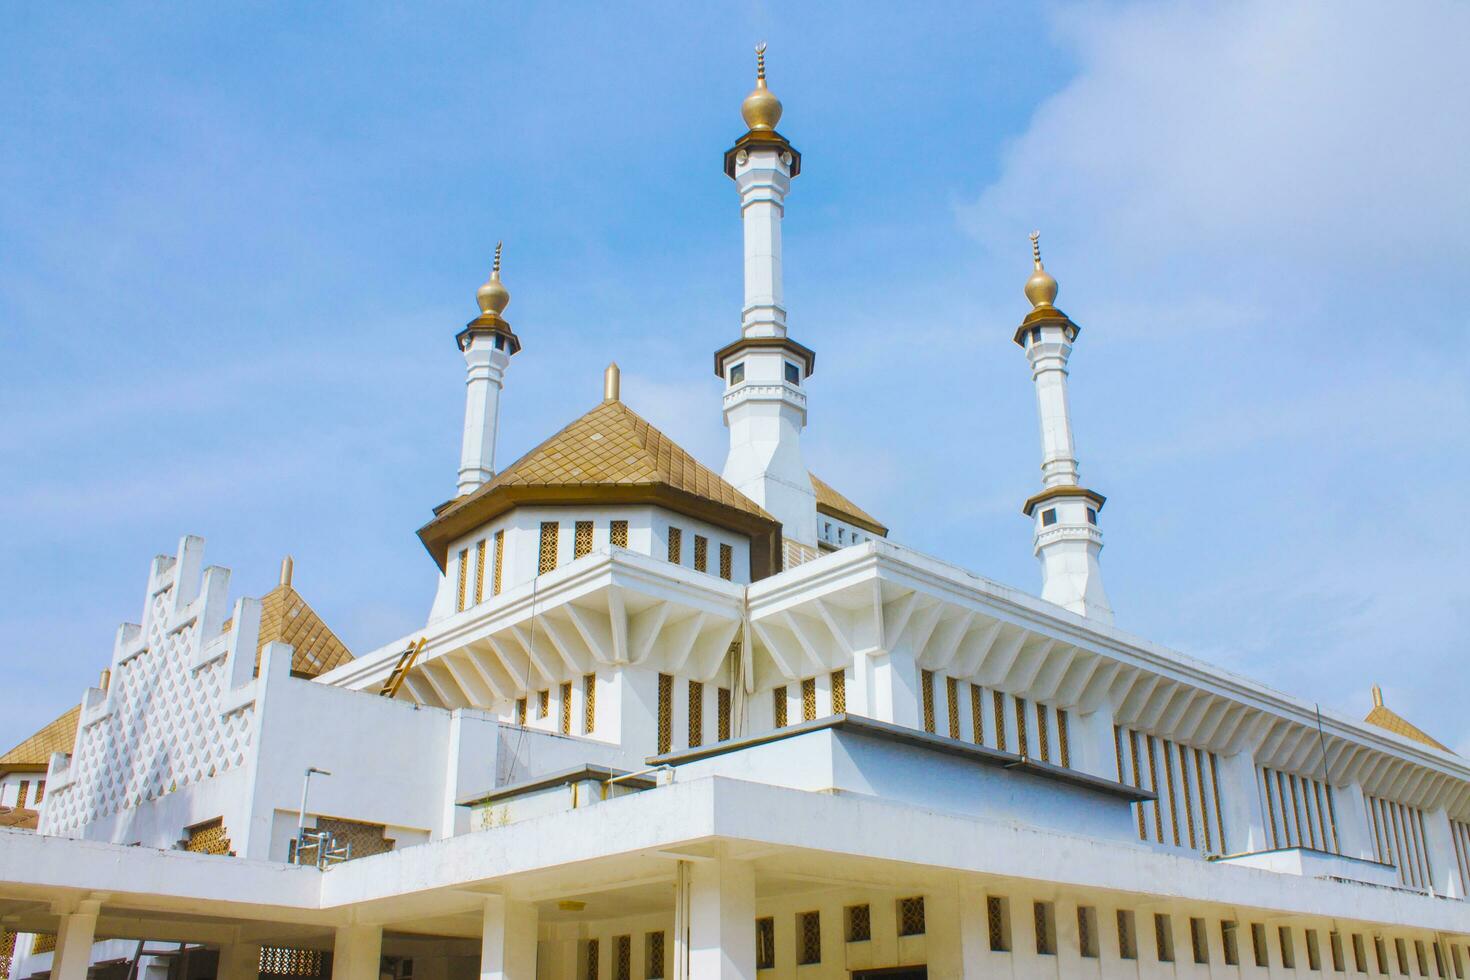 großartig Weiß Moschee mit golden Kuppeln, Blau Himmel Hintergrund, Tasikmalaya, Westen Java, Indonesien foto